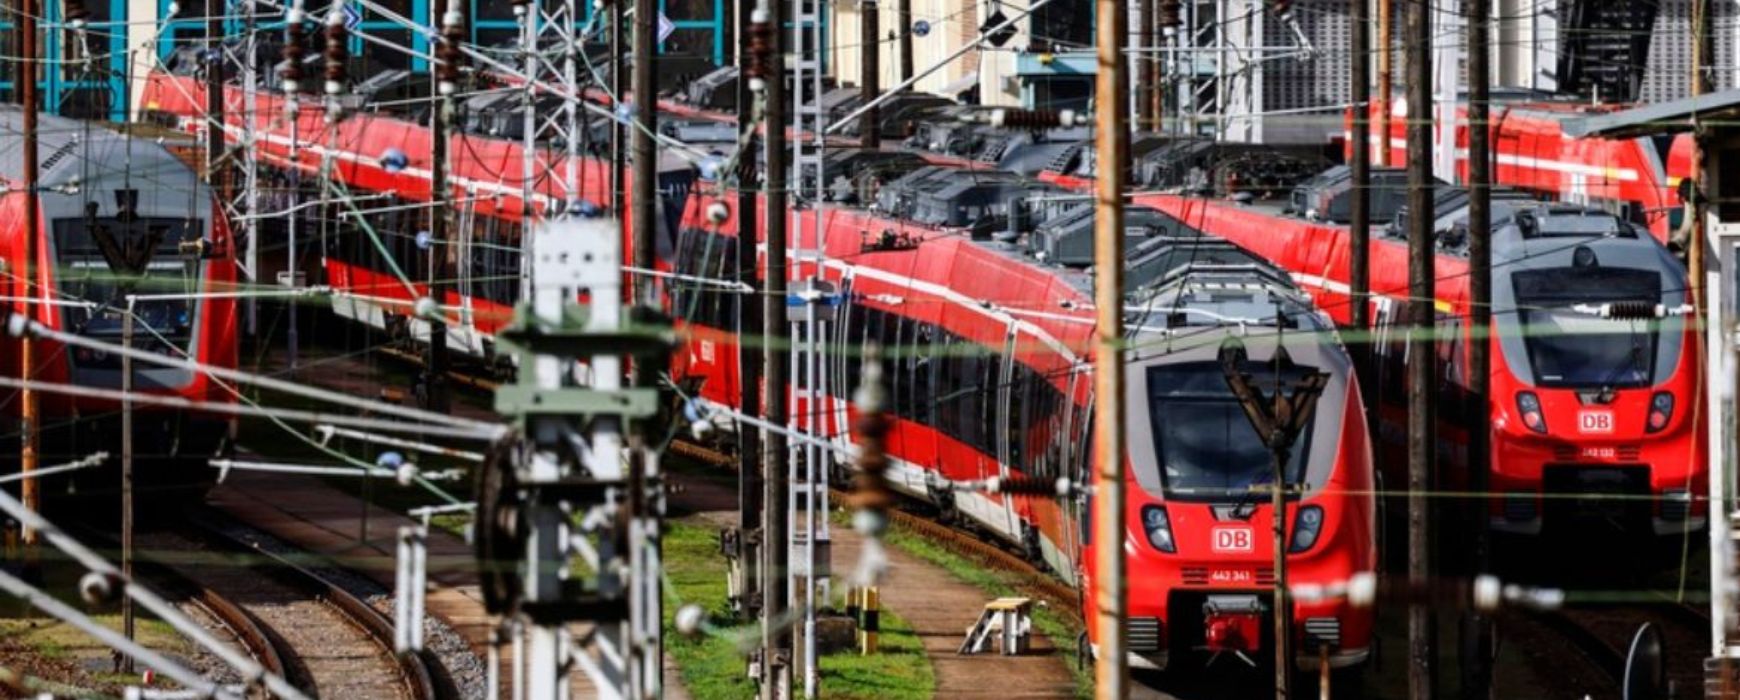 Γερμανία: «Νεκρώνει» από την απεργία εργαζόμενων σε σιδηροδρόμους, λιμάνια και αεροδρόμια – Κατά της ακρίβειας (Video/Photo)